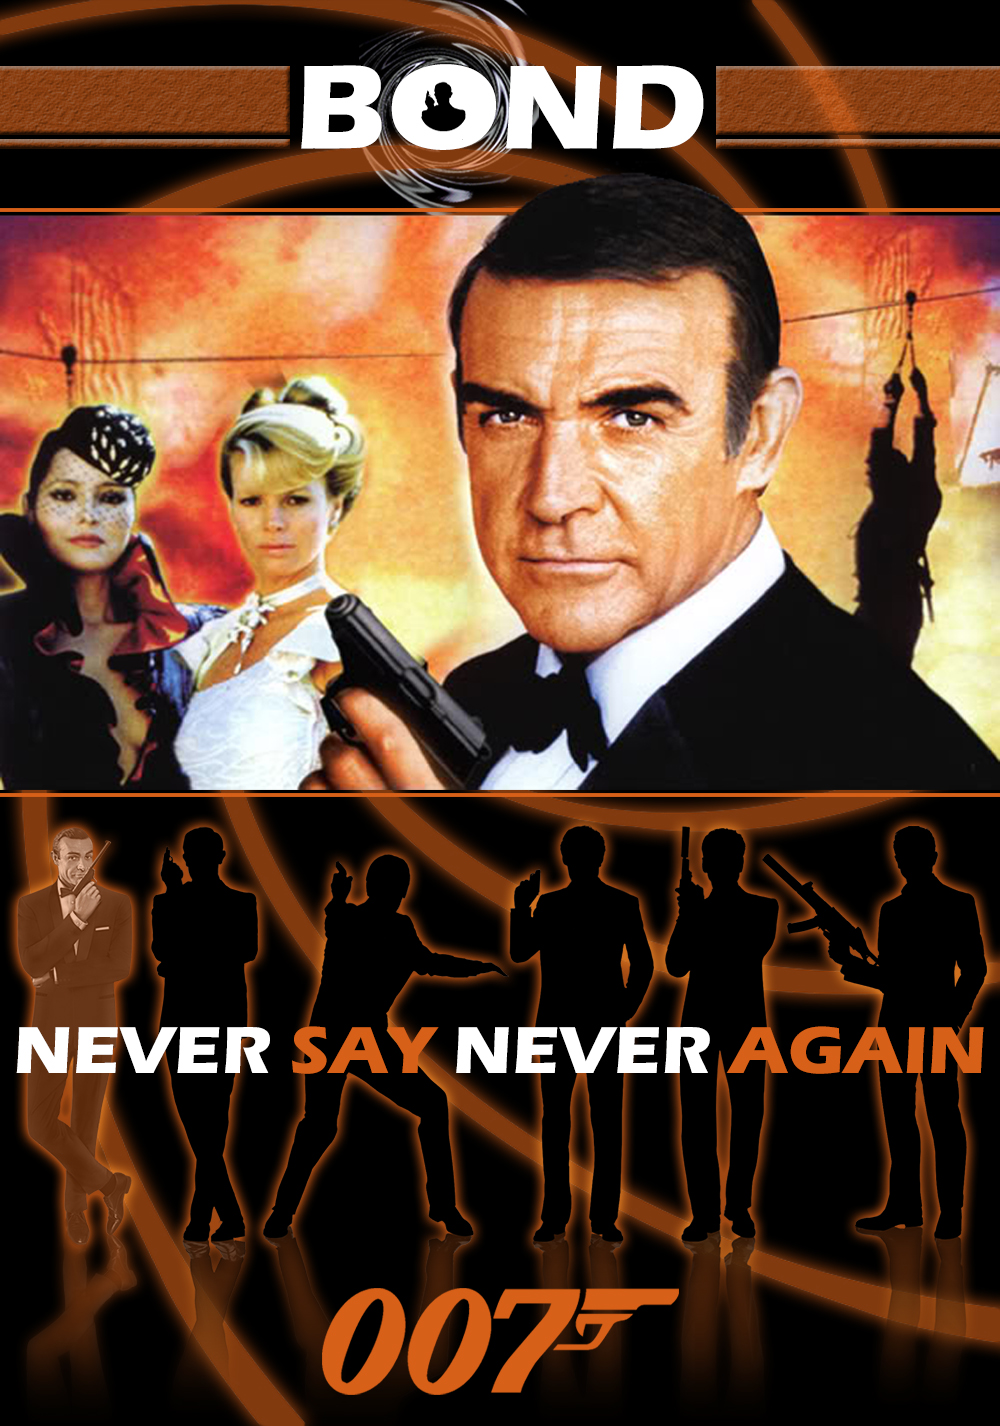 James Bond - Soha ne mondd, hogy soha